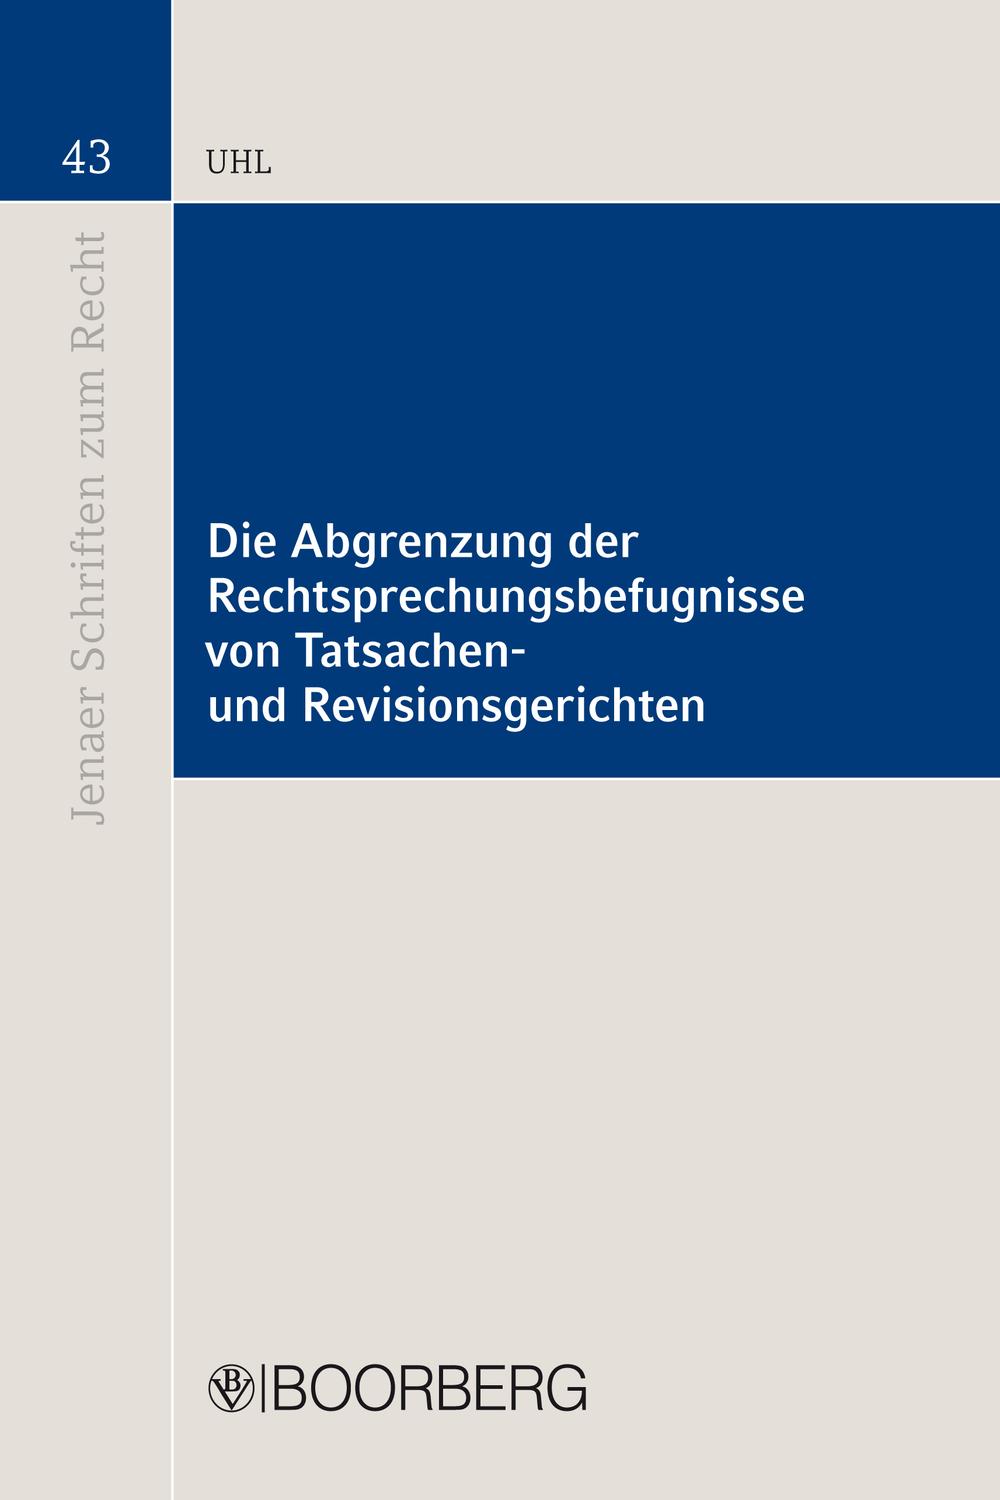 Die Abgrenzung der Rechtsprechungsbefugnisse von Tatsachen- und Revisionsgerichten - Matthias Uhl